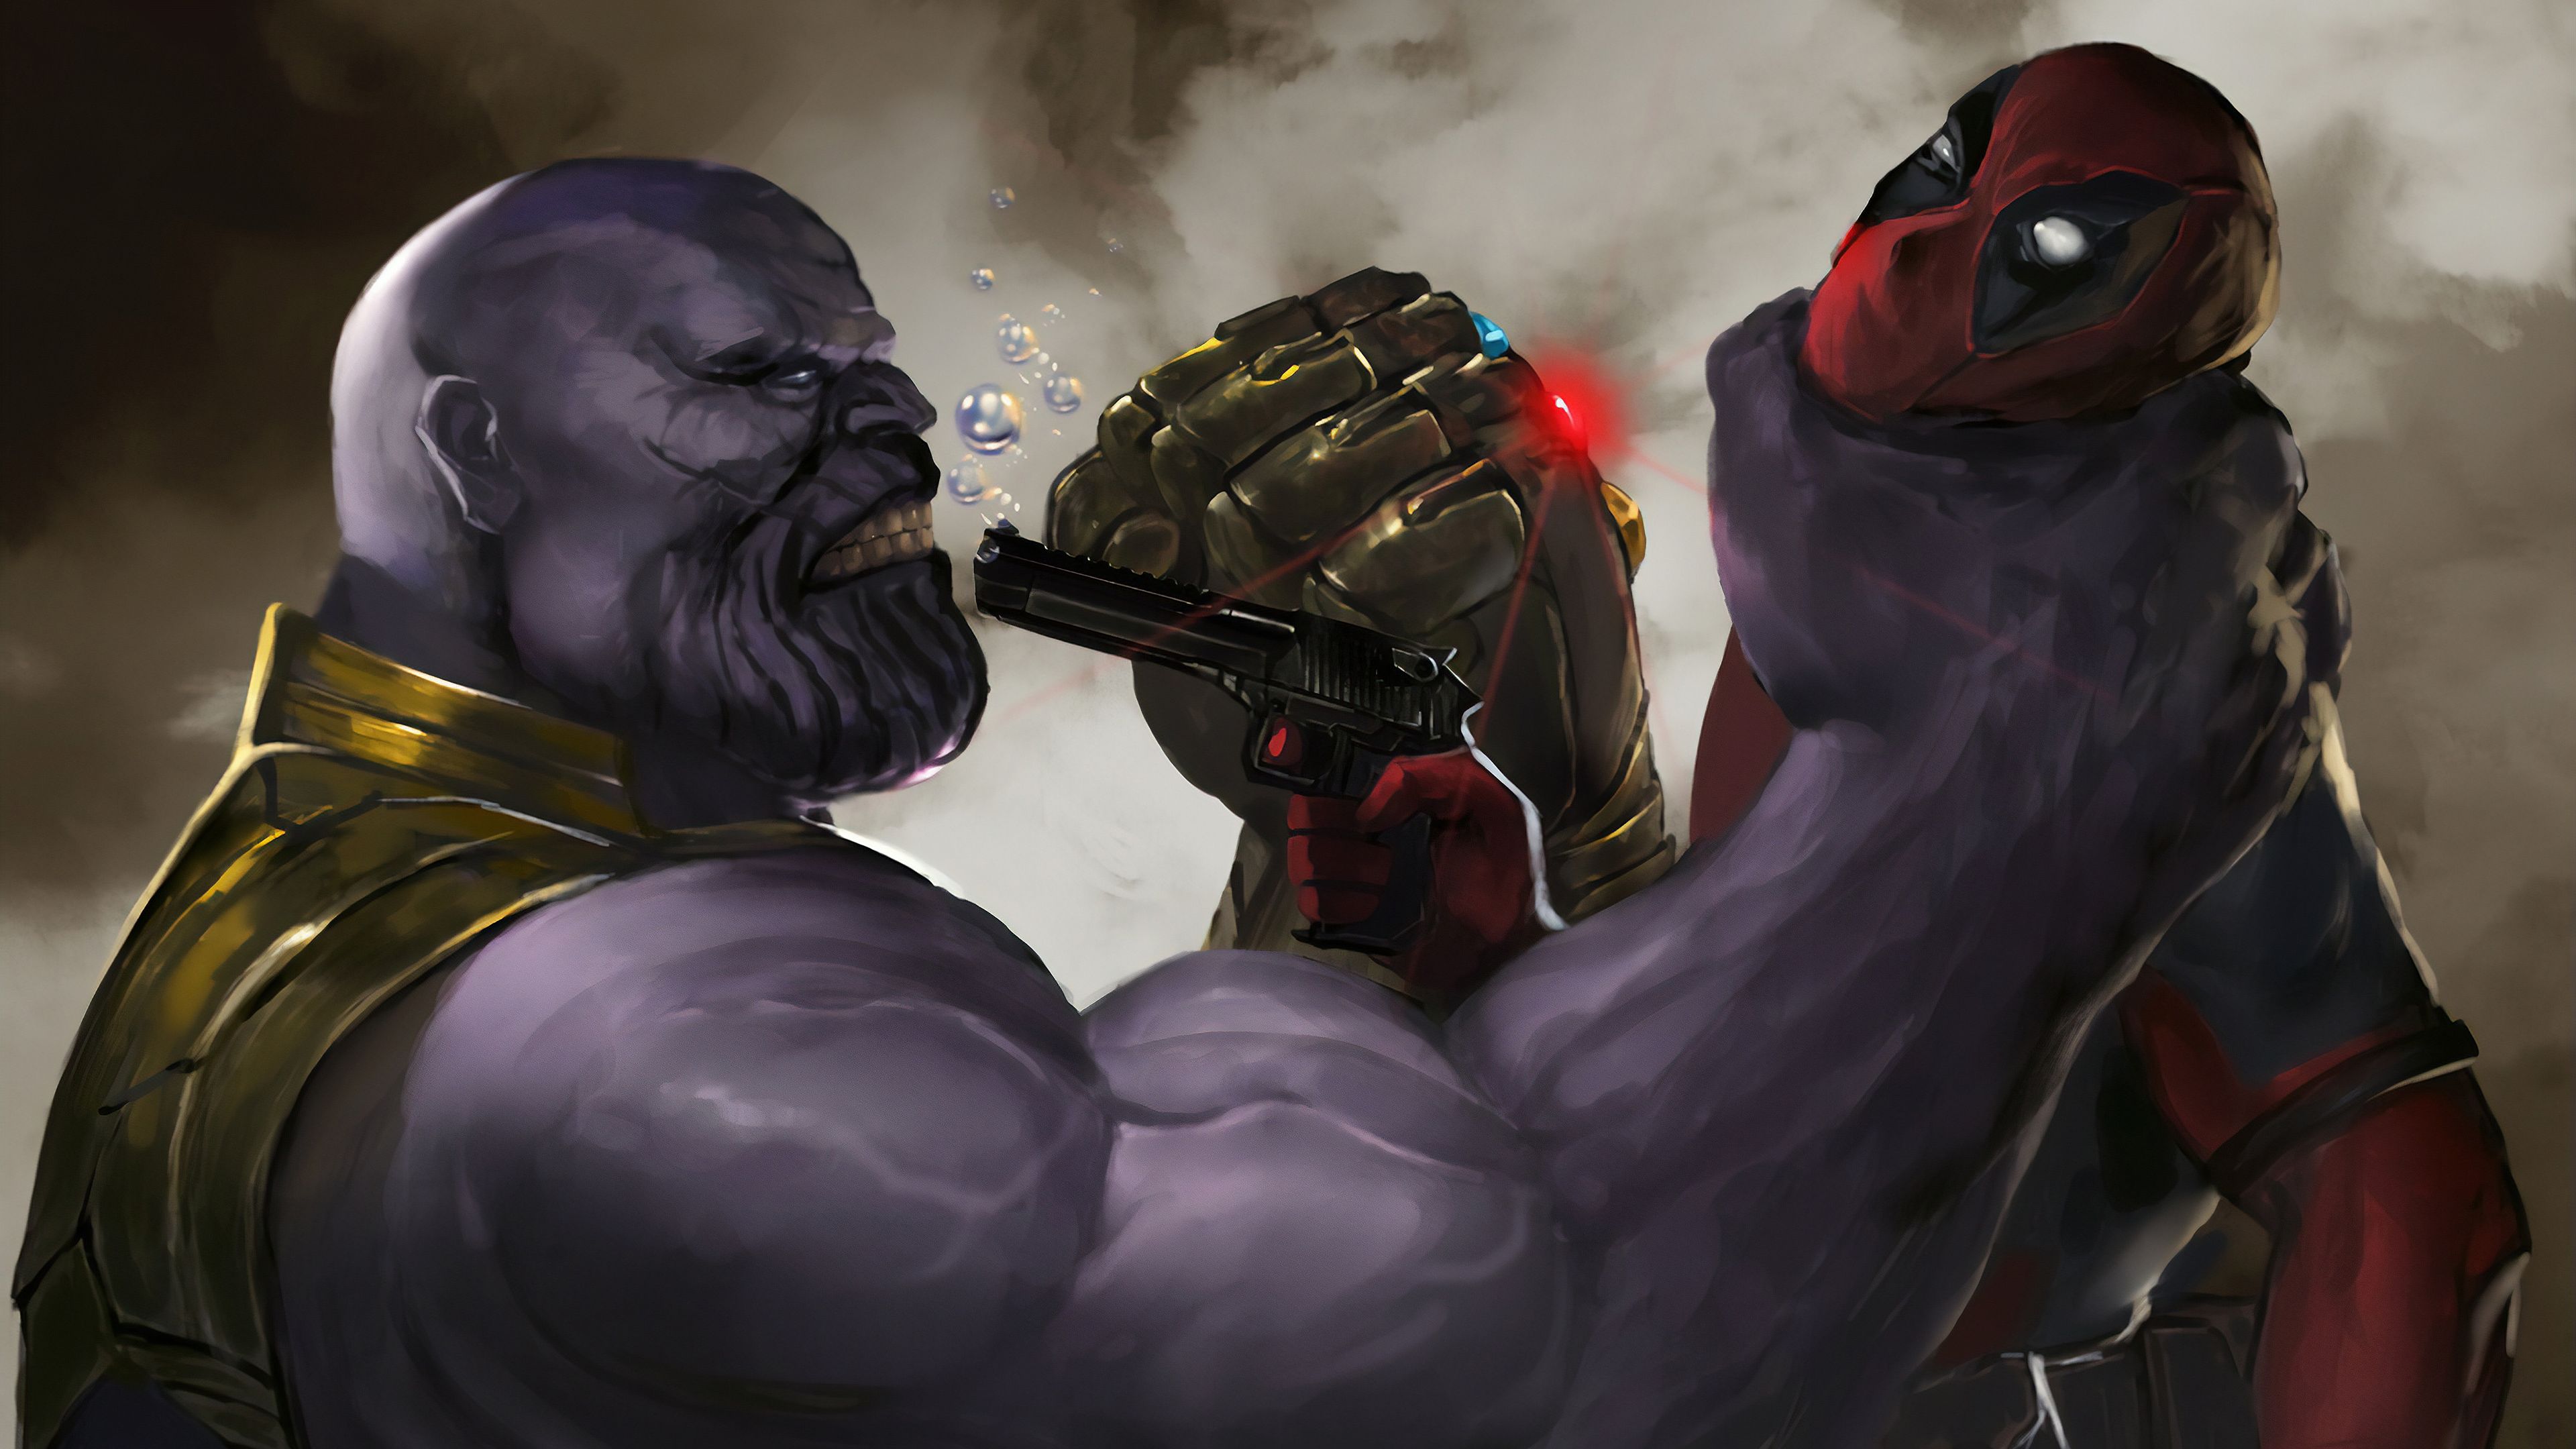 Darkseid Vs Thanos Art Wallpapers